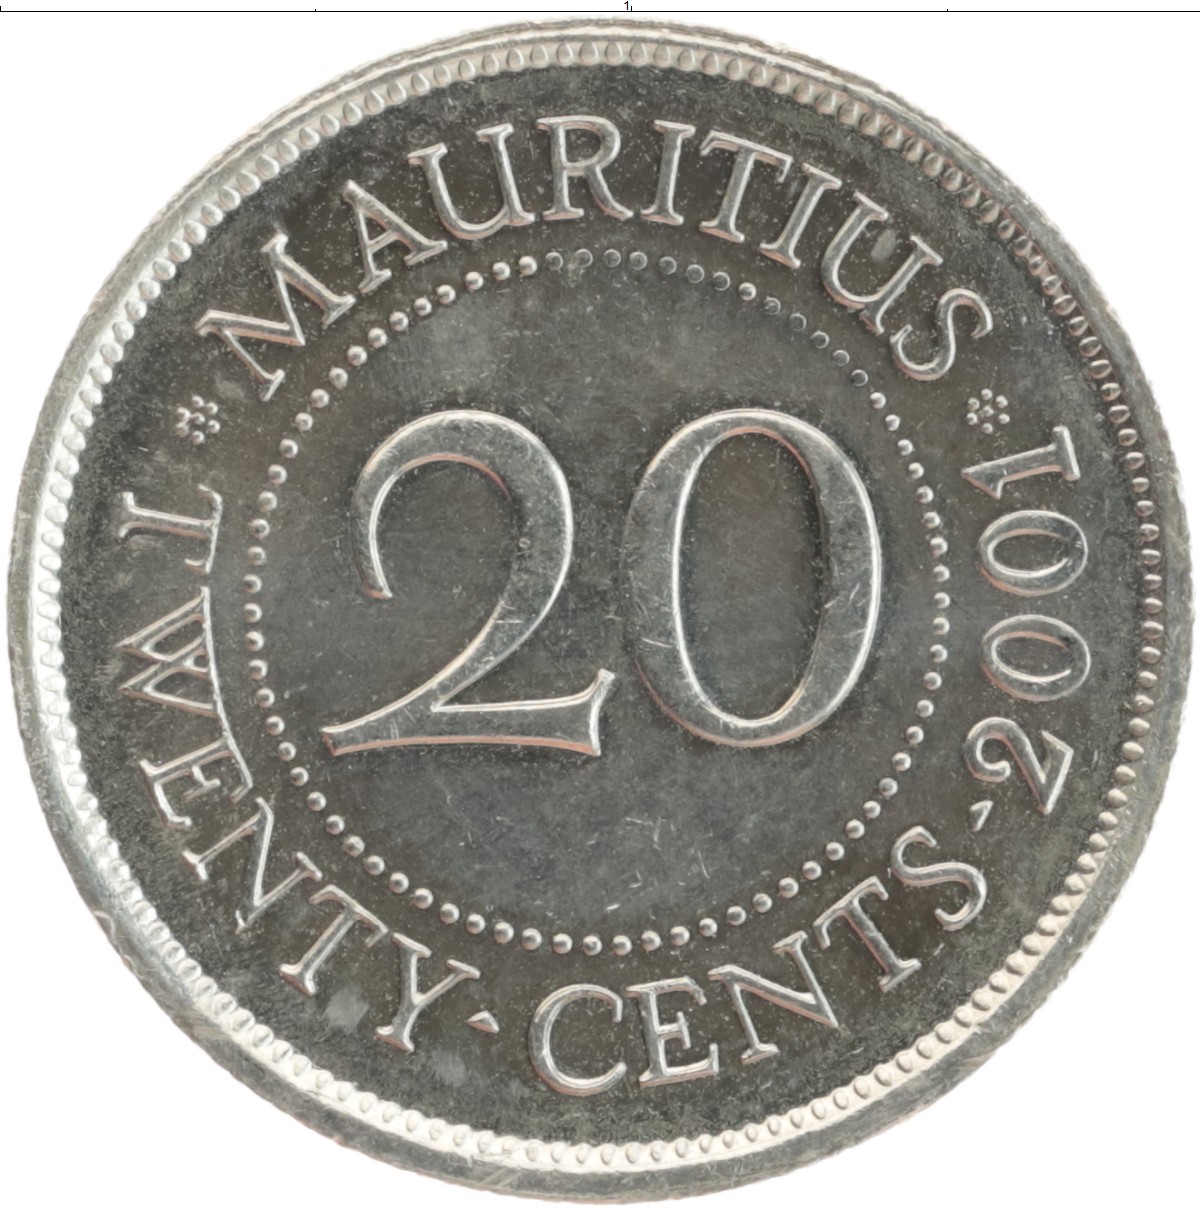 Оригинальность 20. Монета Маврикия 20 центов 2007 года. 0,20 Центов. Монеты Маврикия фото. Монеты Маврикий каталог с фотографиями и названиями.